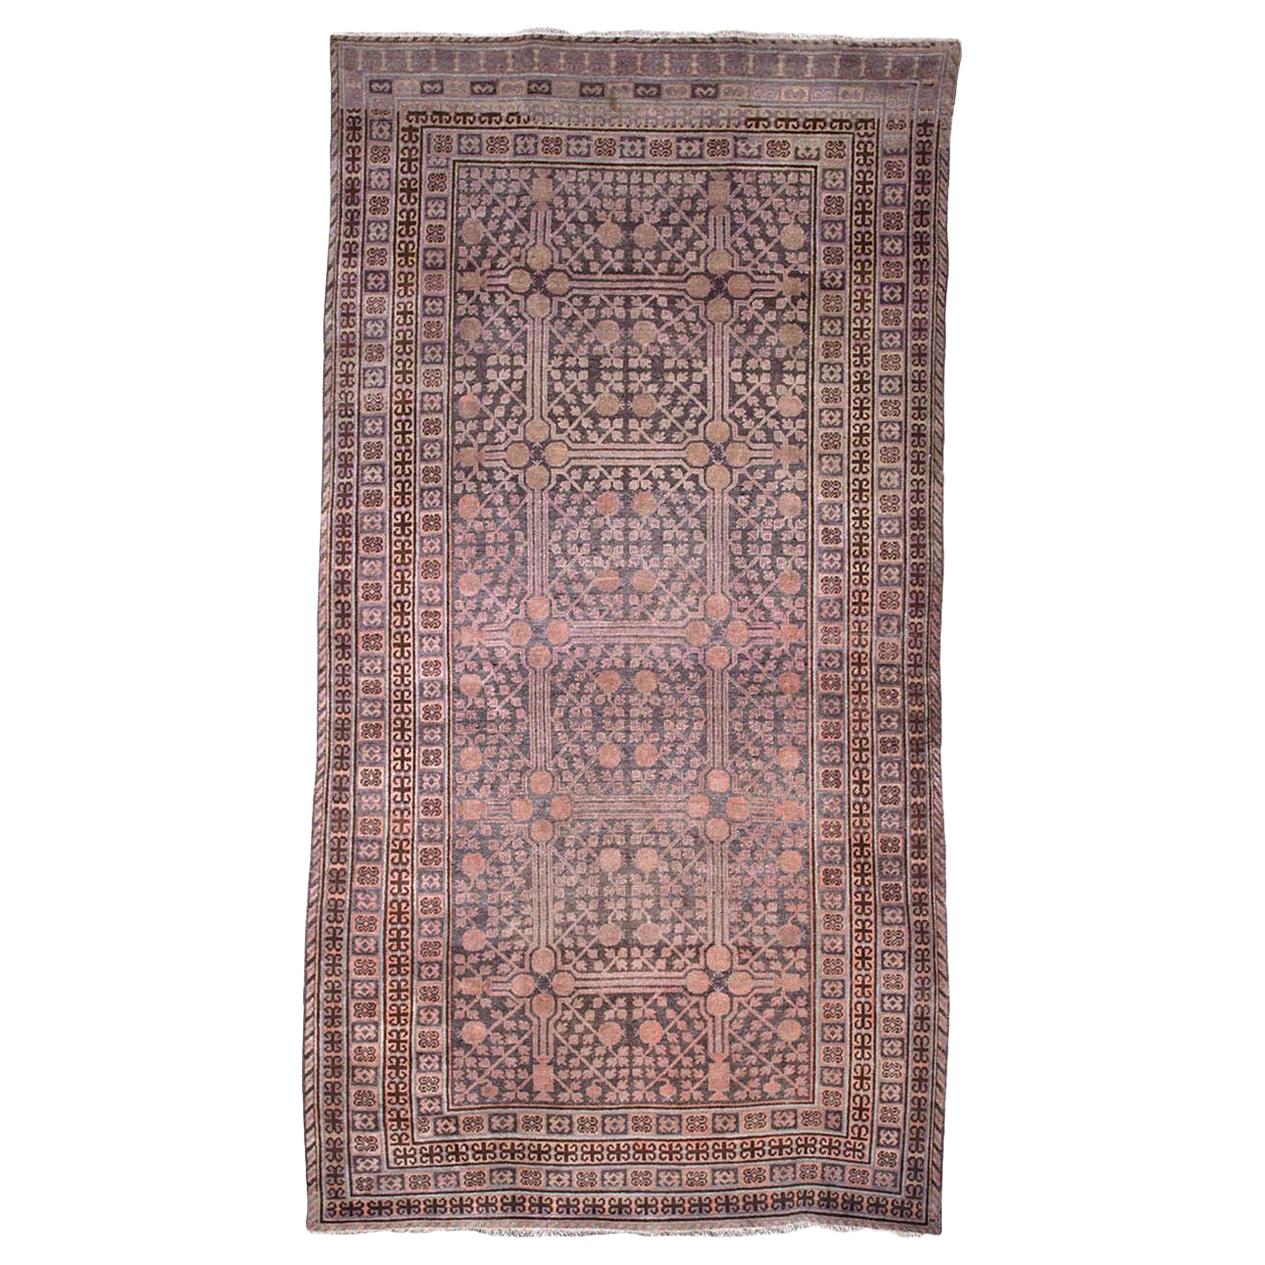 Rare Antique Kothan Carpet or Rug For Sale